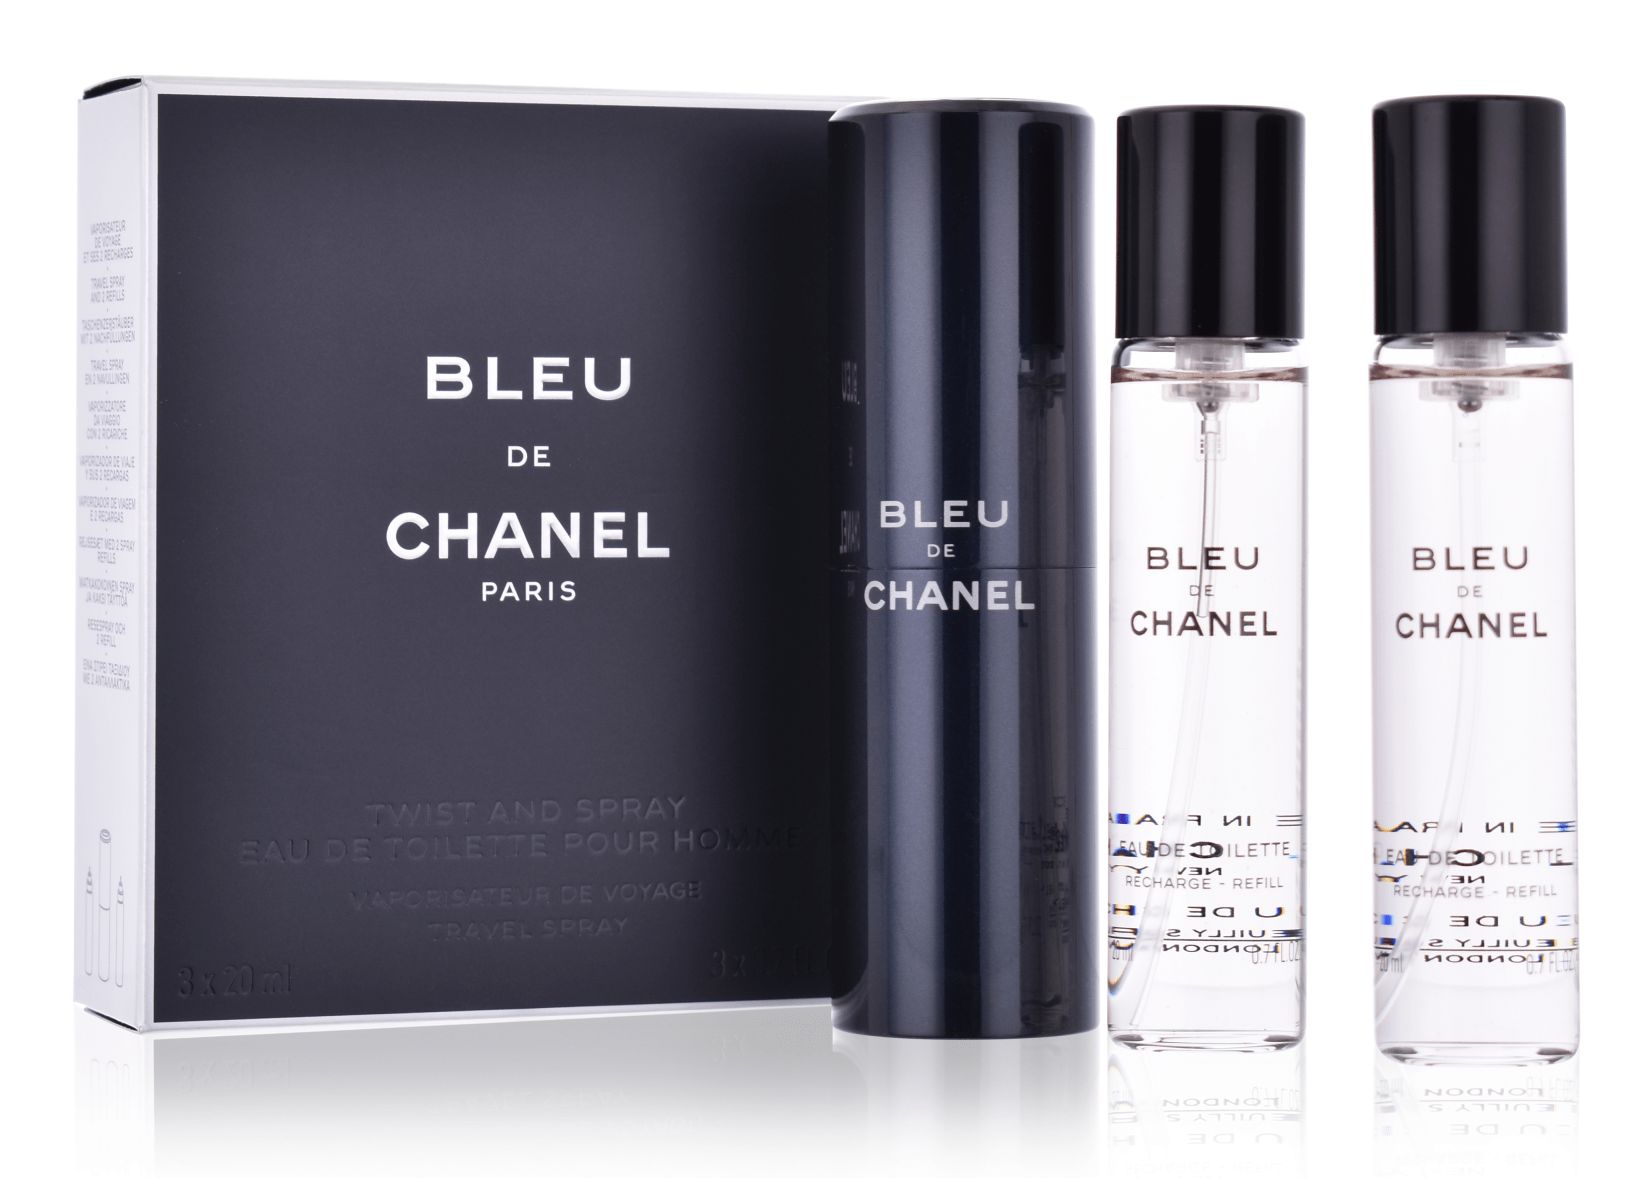 Chanel Bleu de Chanel 3 x 20 ml Eau de Toilette Twist and Spray